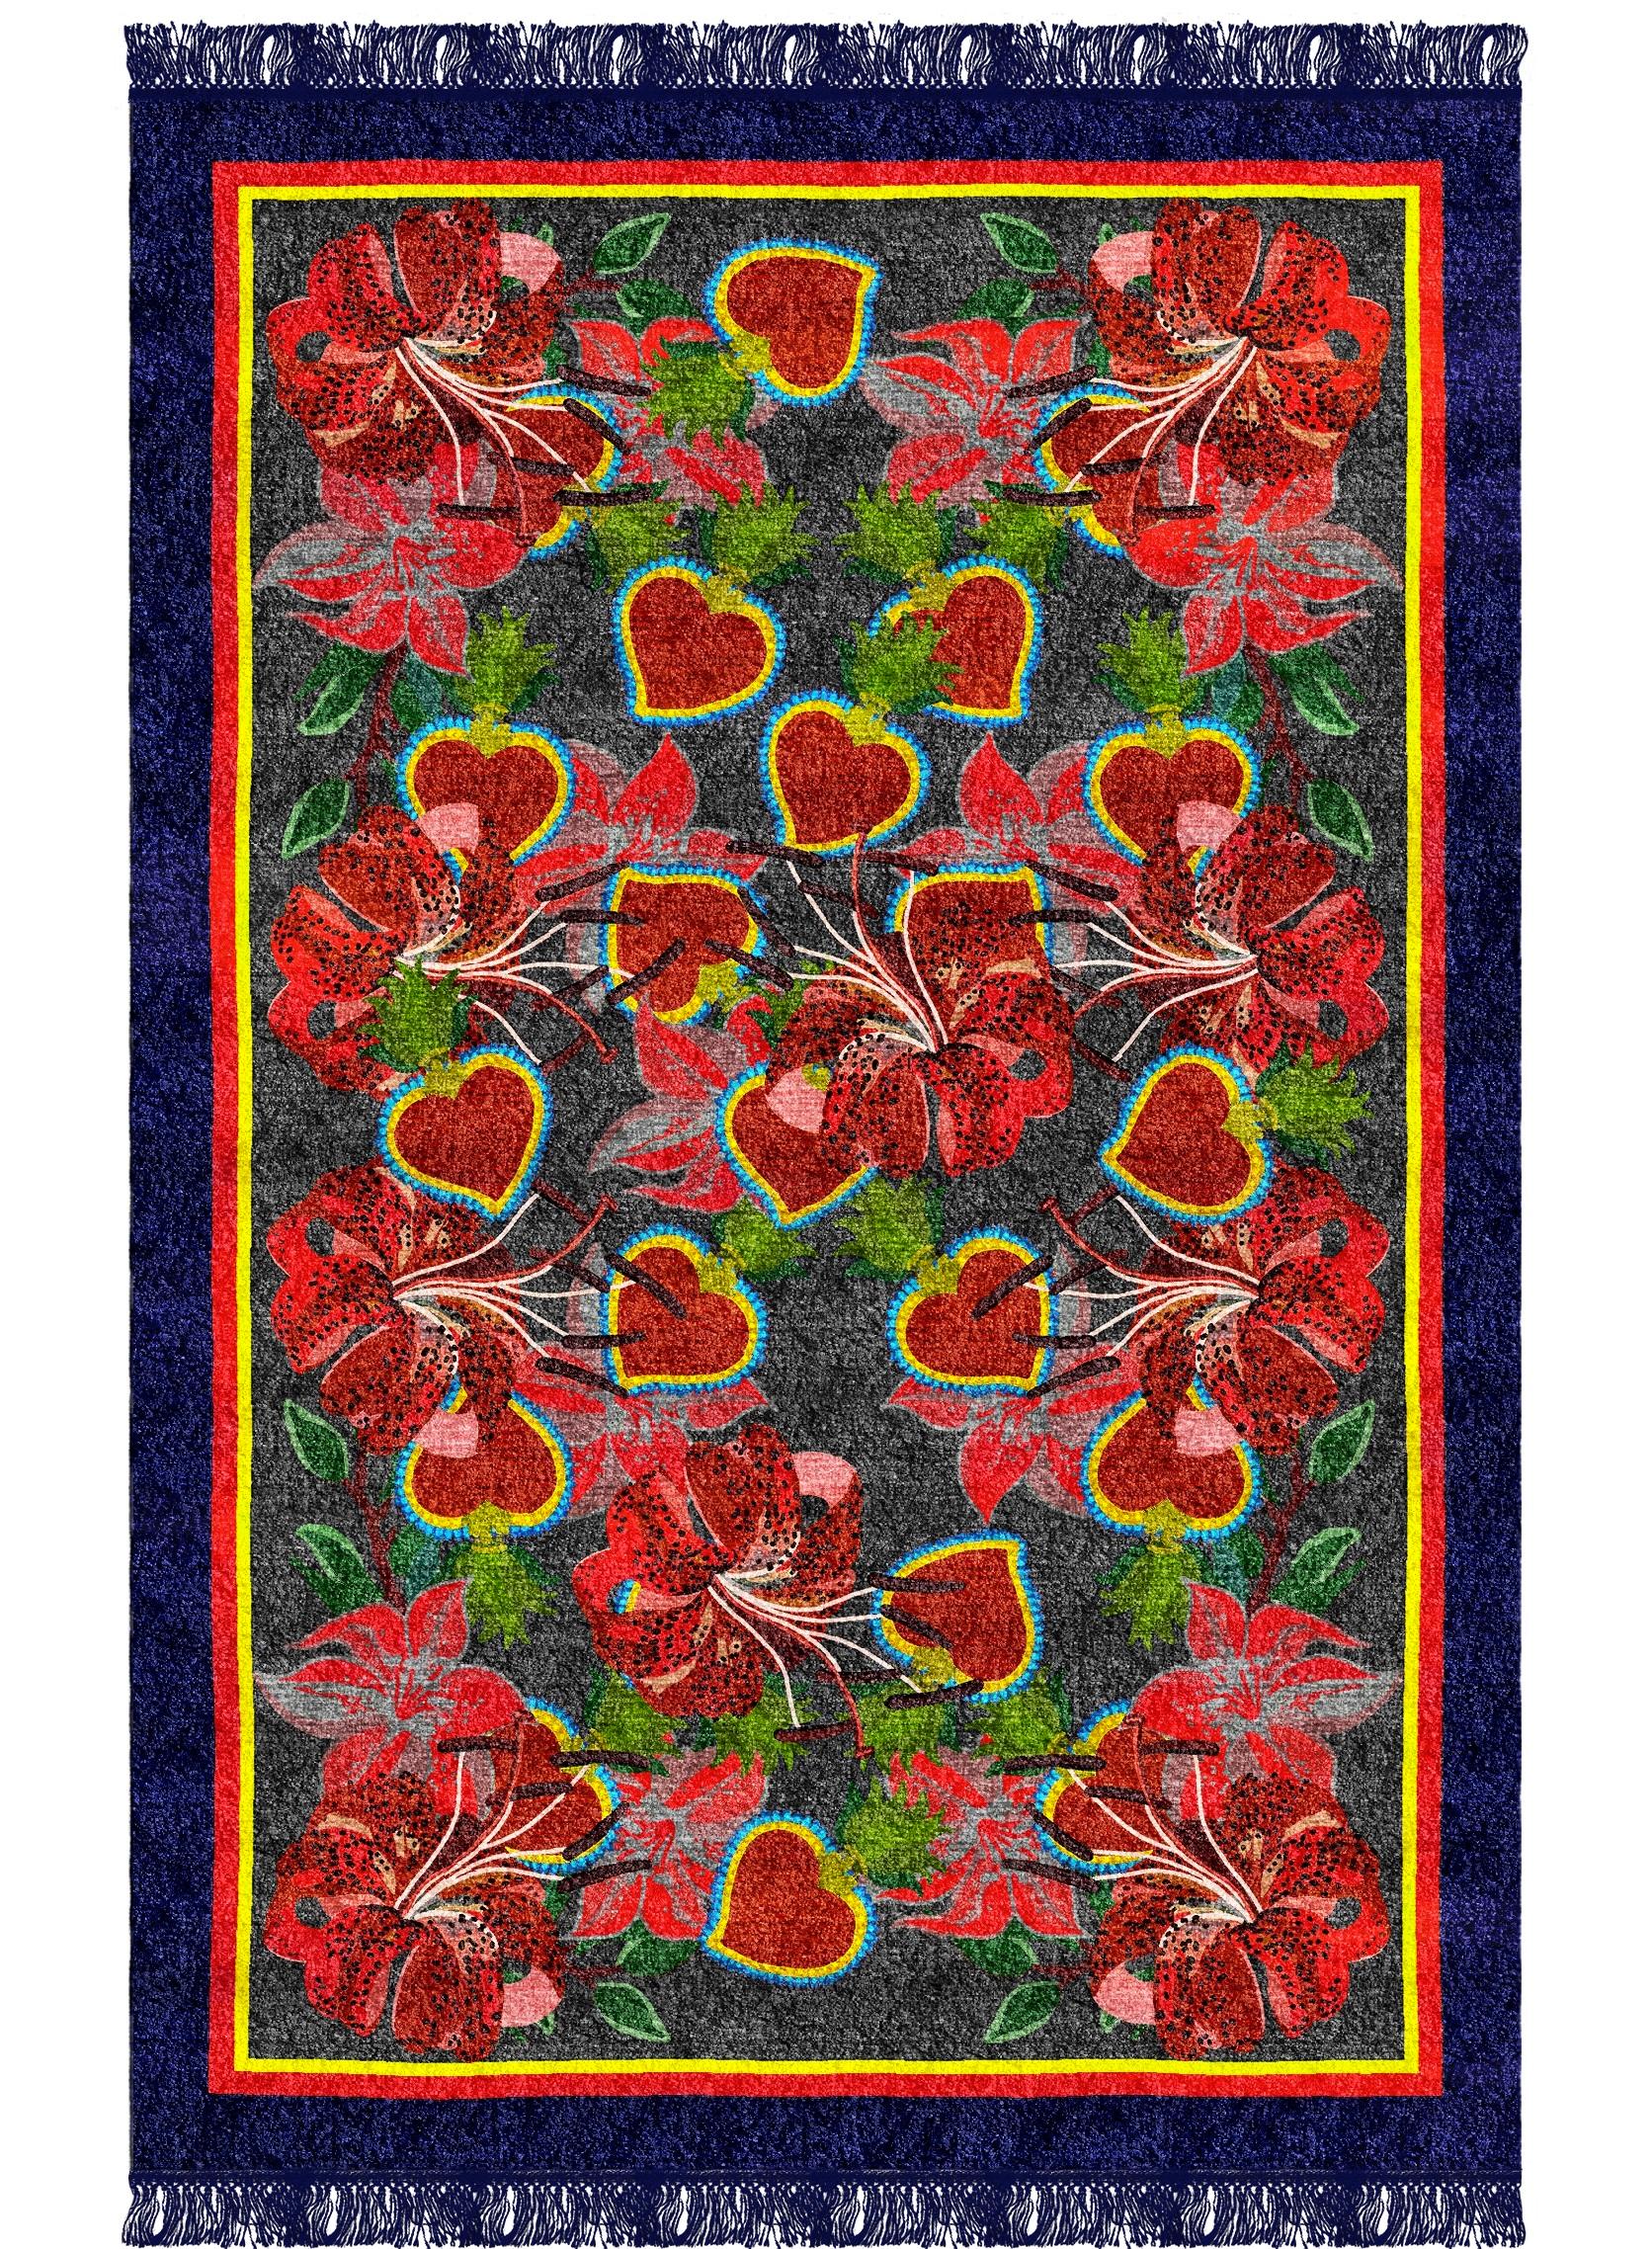 Cuori-Teppich I von Giulio Brambilla
Abmessungen: D 300 x B 200 x H 0,5 cm
MATERIALIEN: NZ-Wolle, Melange-Garn

Dieser Teppich, benannt nach dem italienischen Wort für 